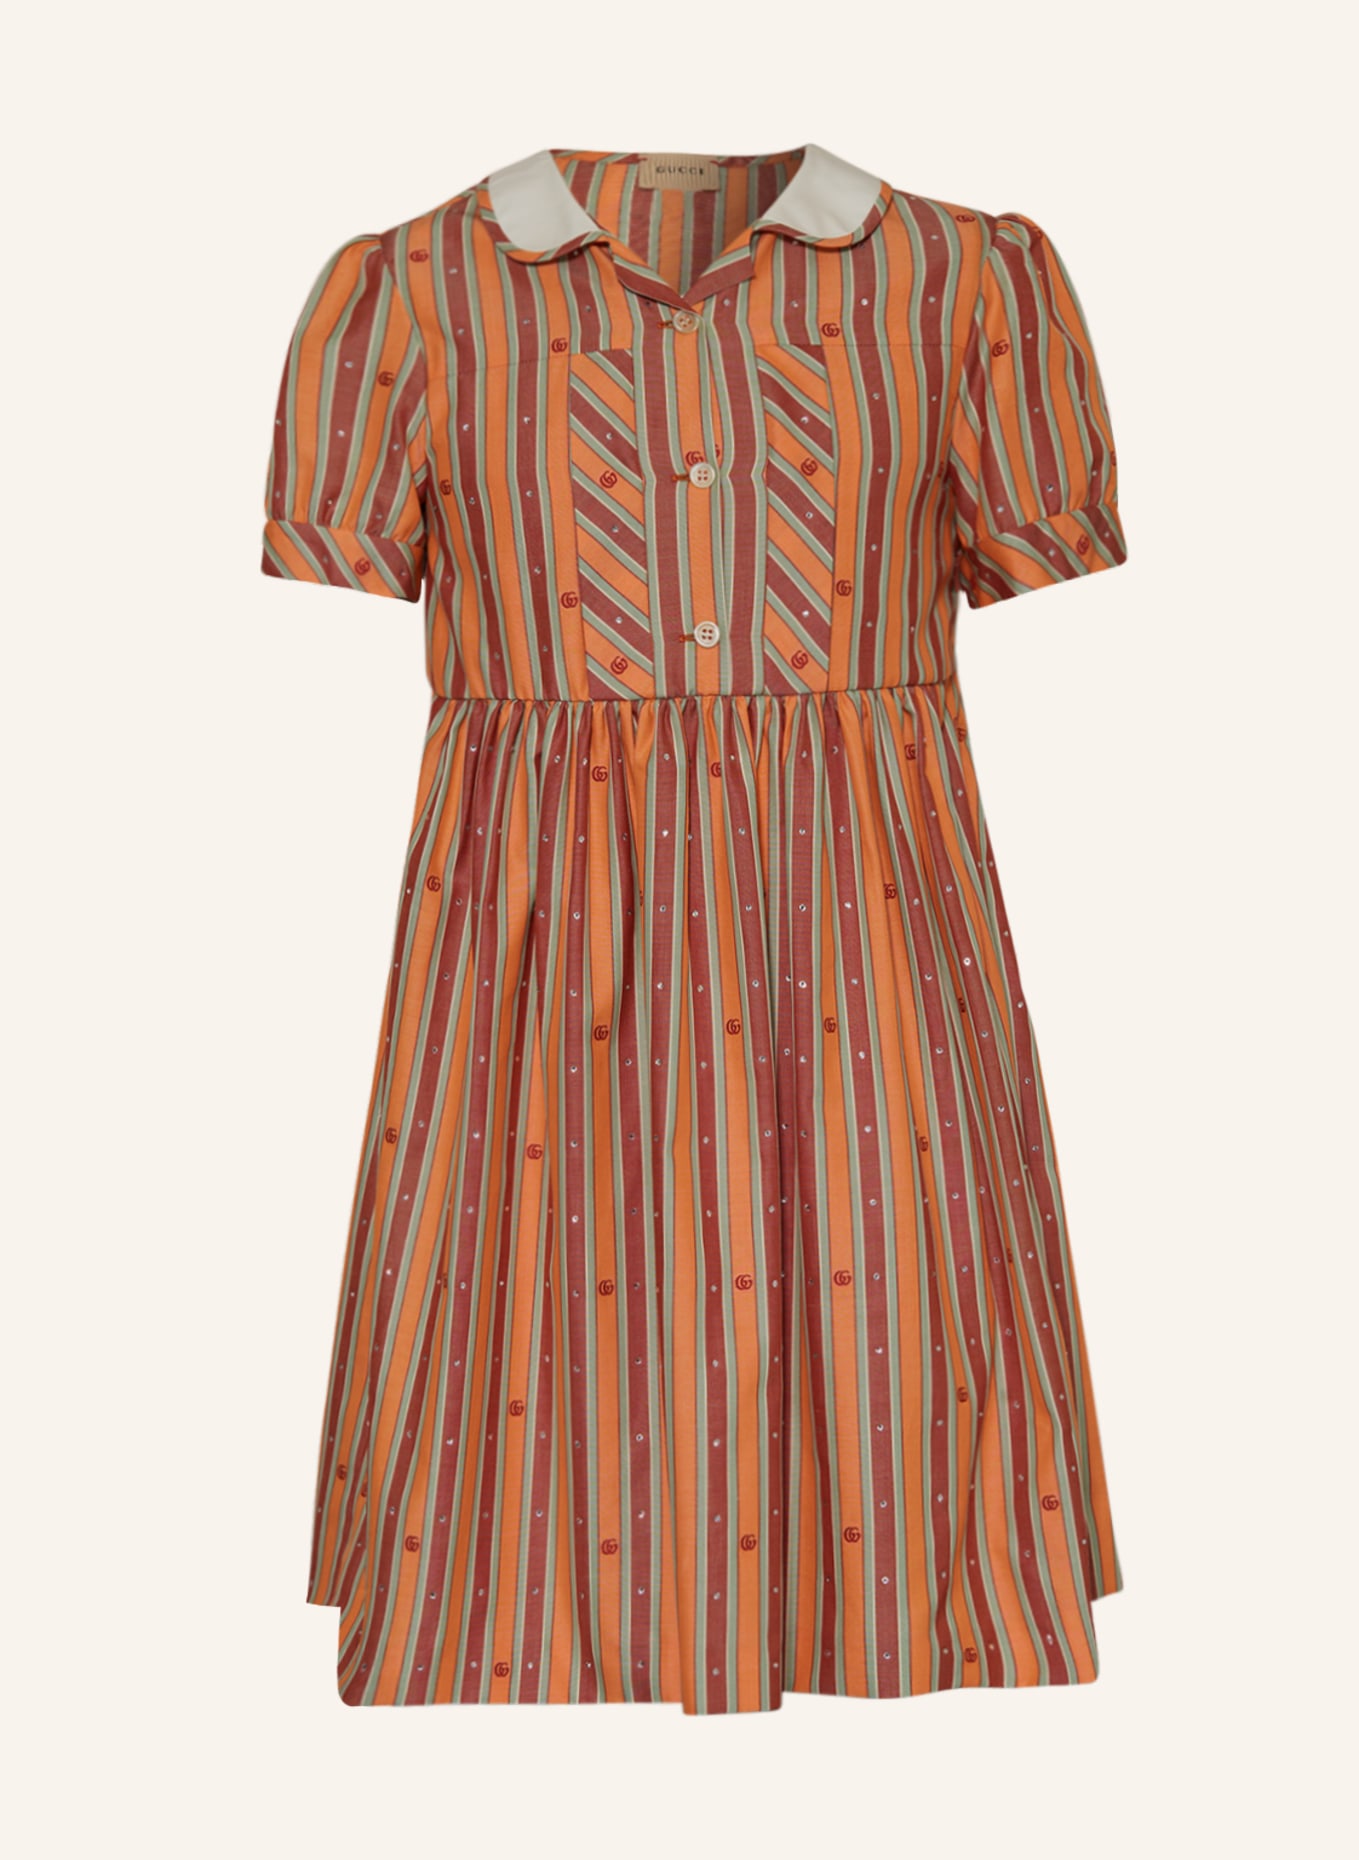 GUCCI Kleid mit Schmucksteinen, Farbe: ORANGE/ DUNKELROT/ HELLGRÜN (Bild 1)